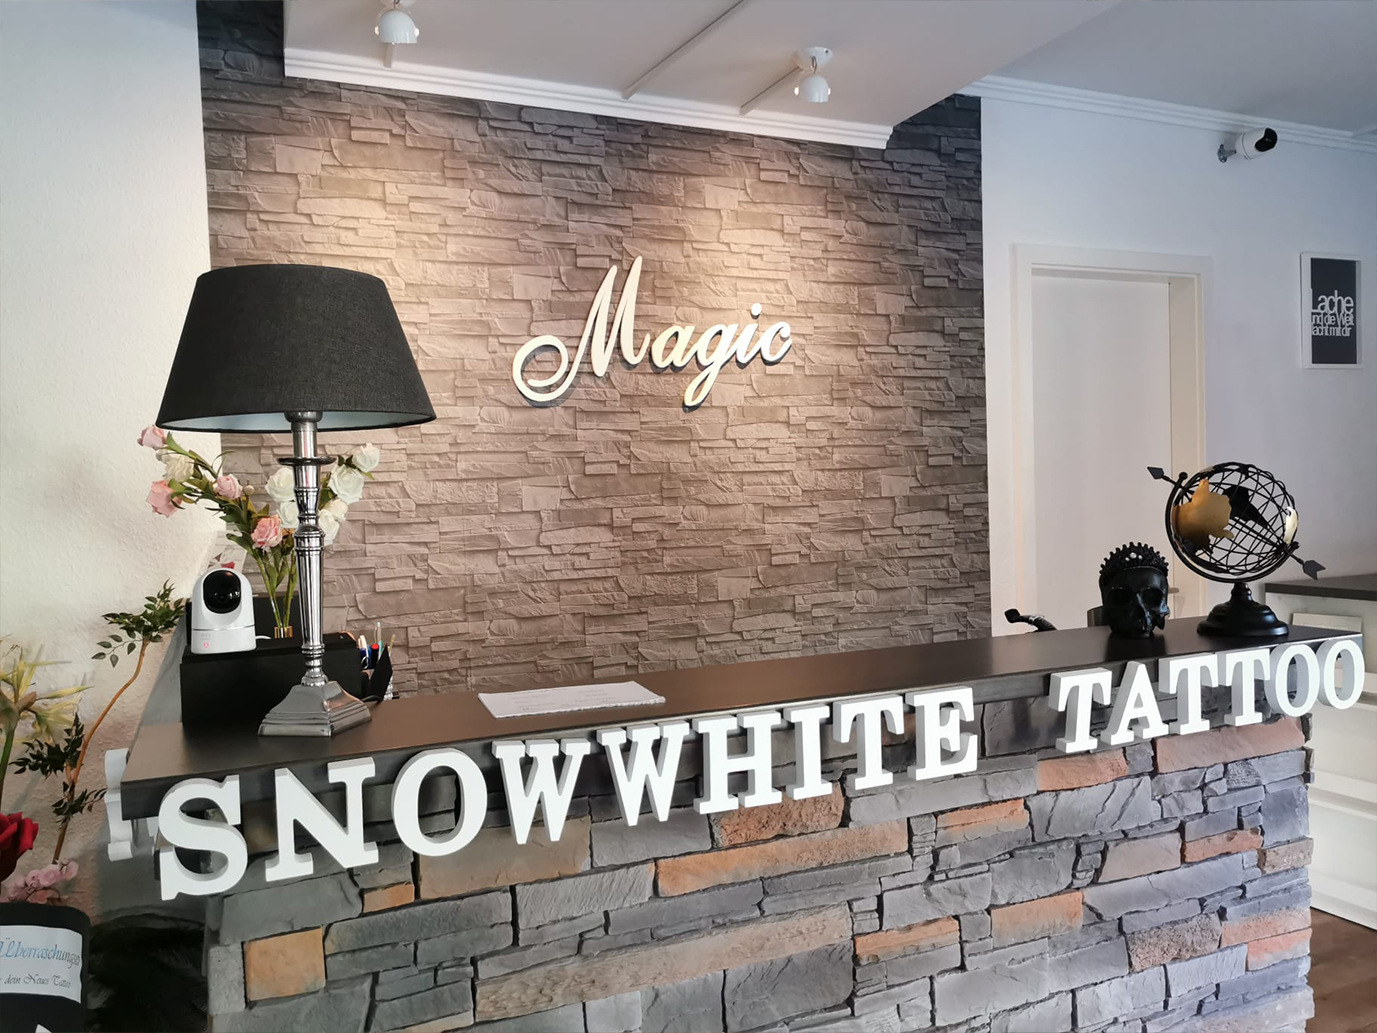 Magic and Snowwhite Tattoo – Ihr Tätowierer in Berlin!